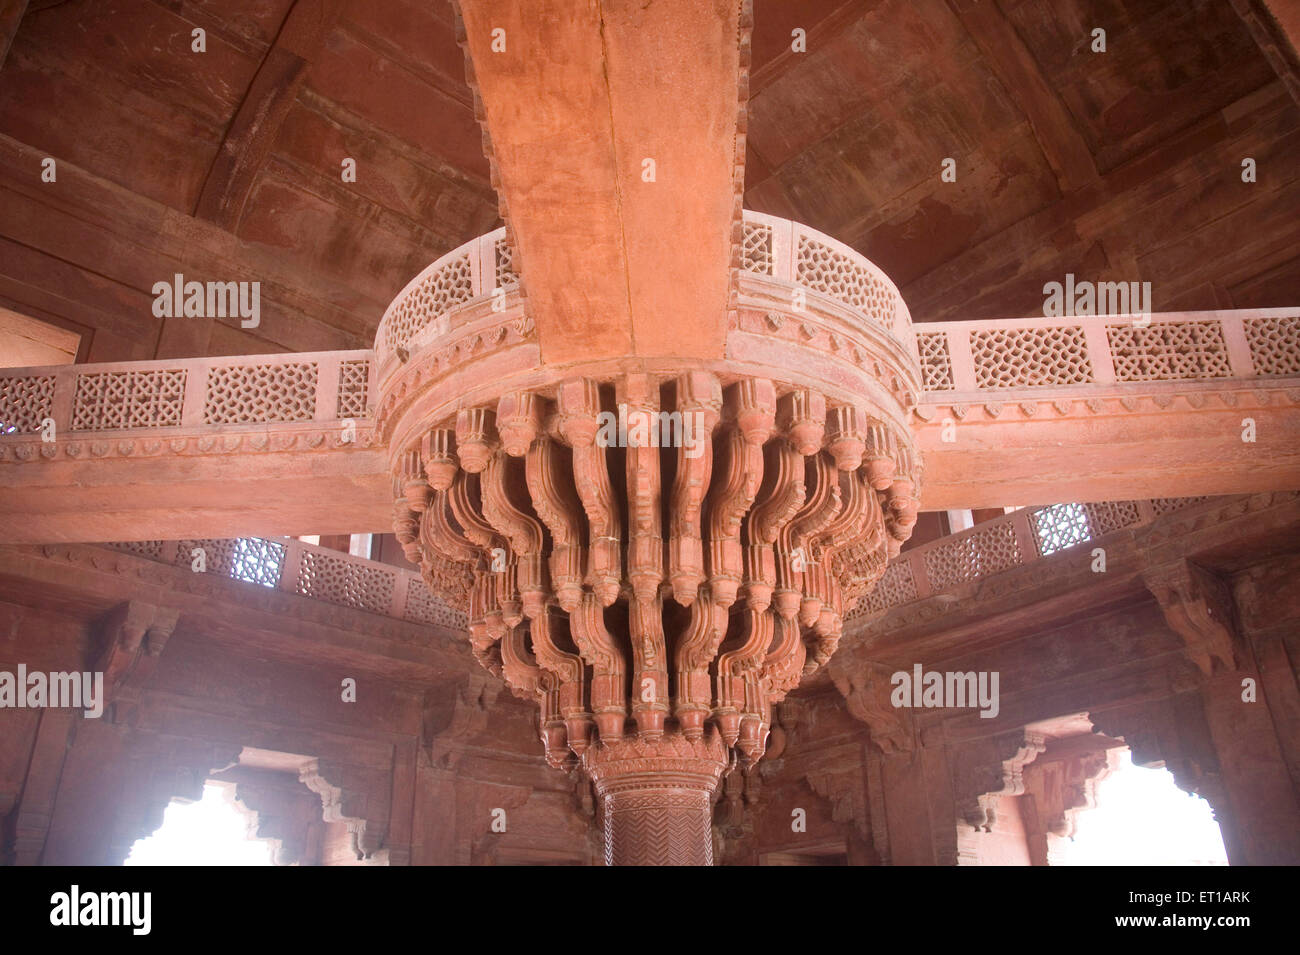 Diwan i Khas pillars in sunlight ; red stone Mughal architecture ; Fatehpur Sikiri ; Uttar Pradesh ; India Stock Photo